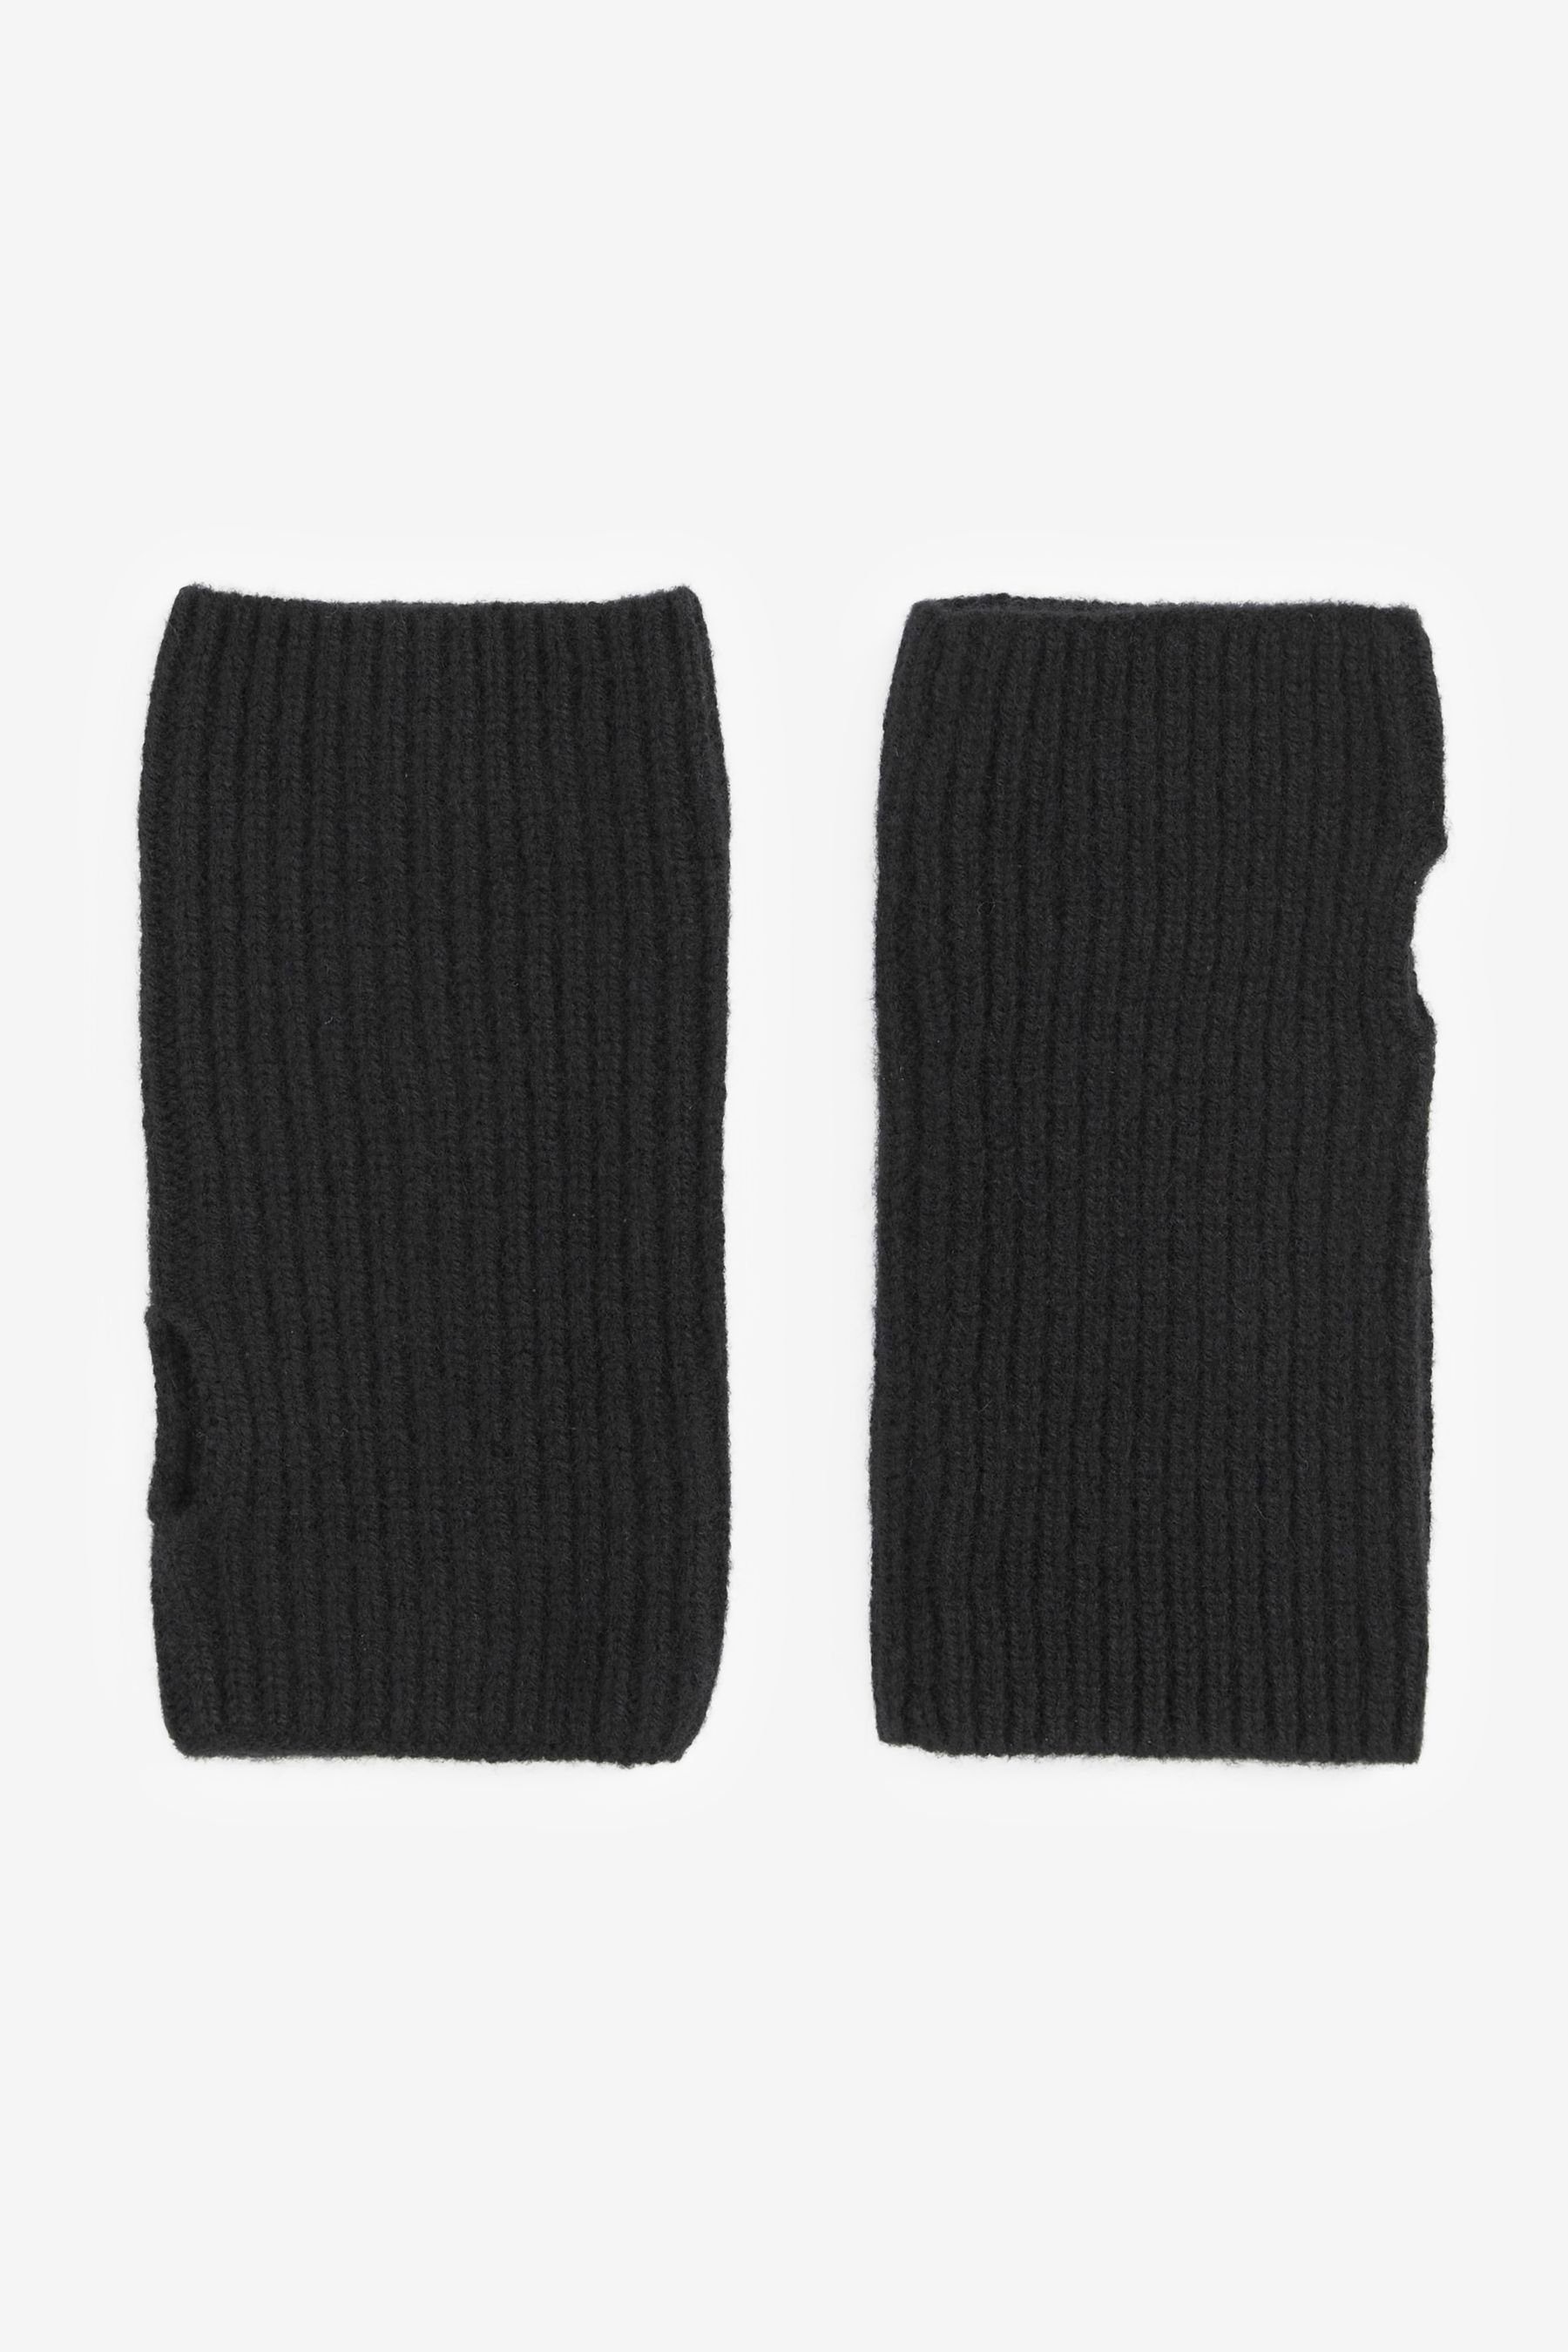 Next Strickhandschuhe Collection Luxe 30% Kaschmir Handwärmer Handschuhe Black